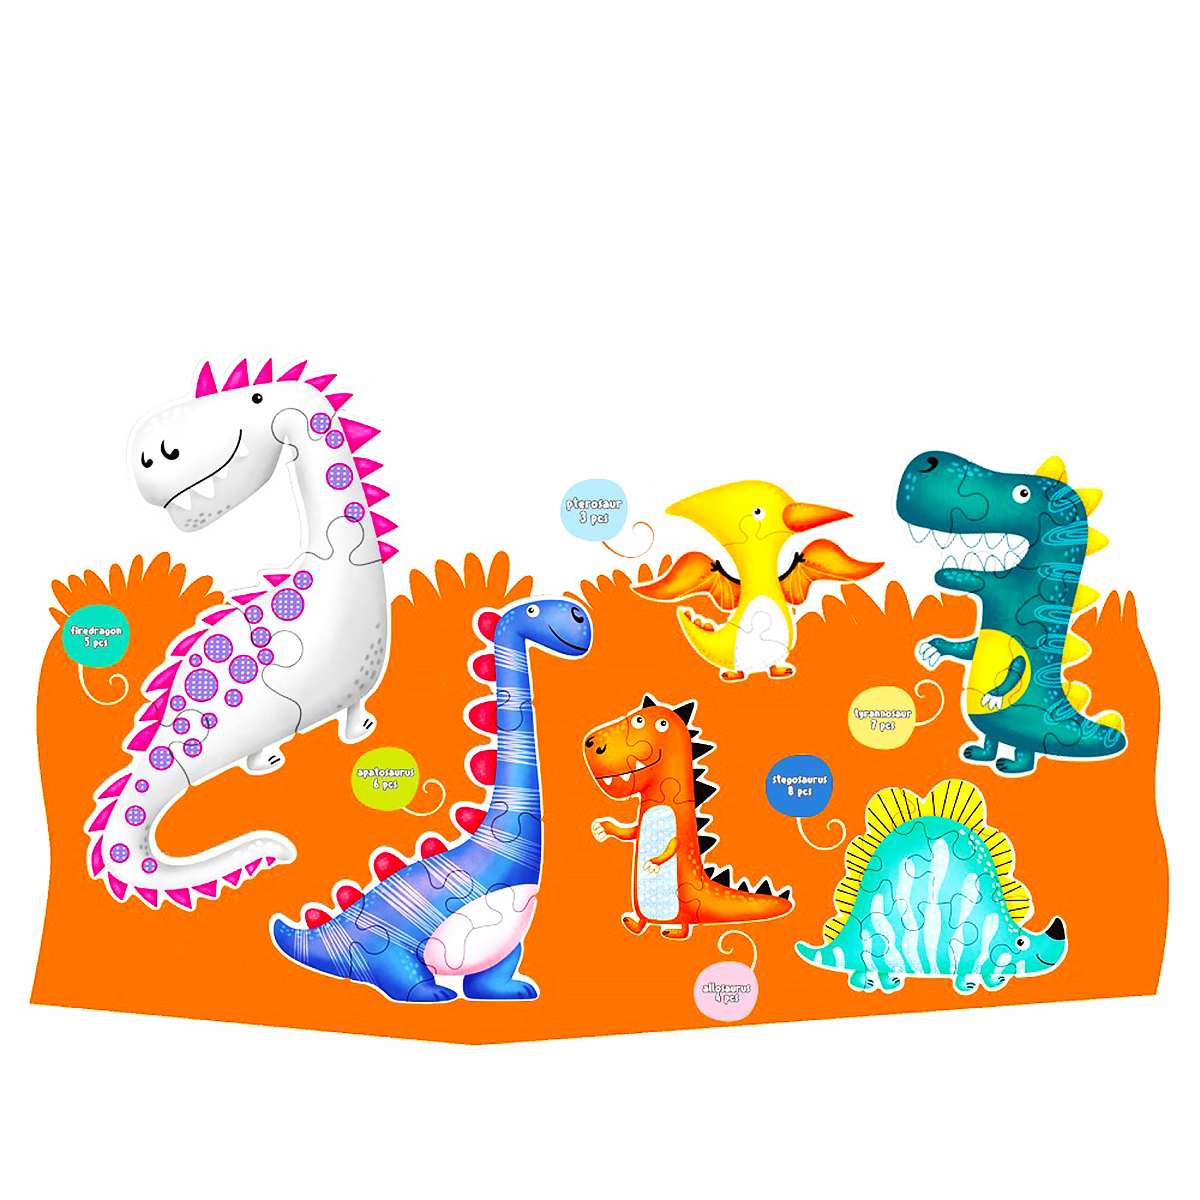 6 Puzzles Los Dinosaurios de 3-4-5-6-7 y 8 piezas